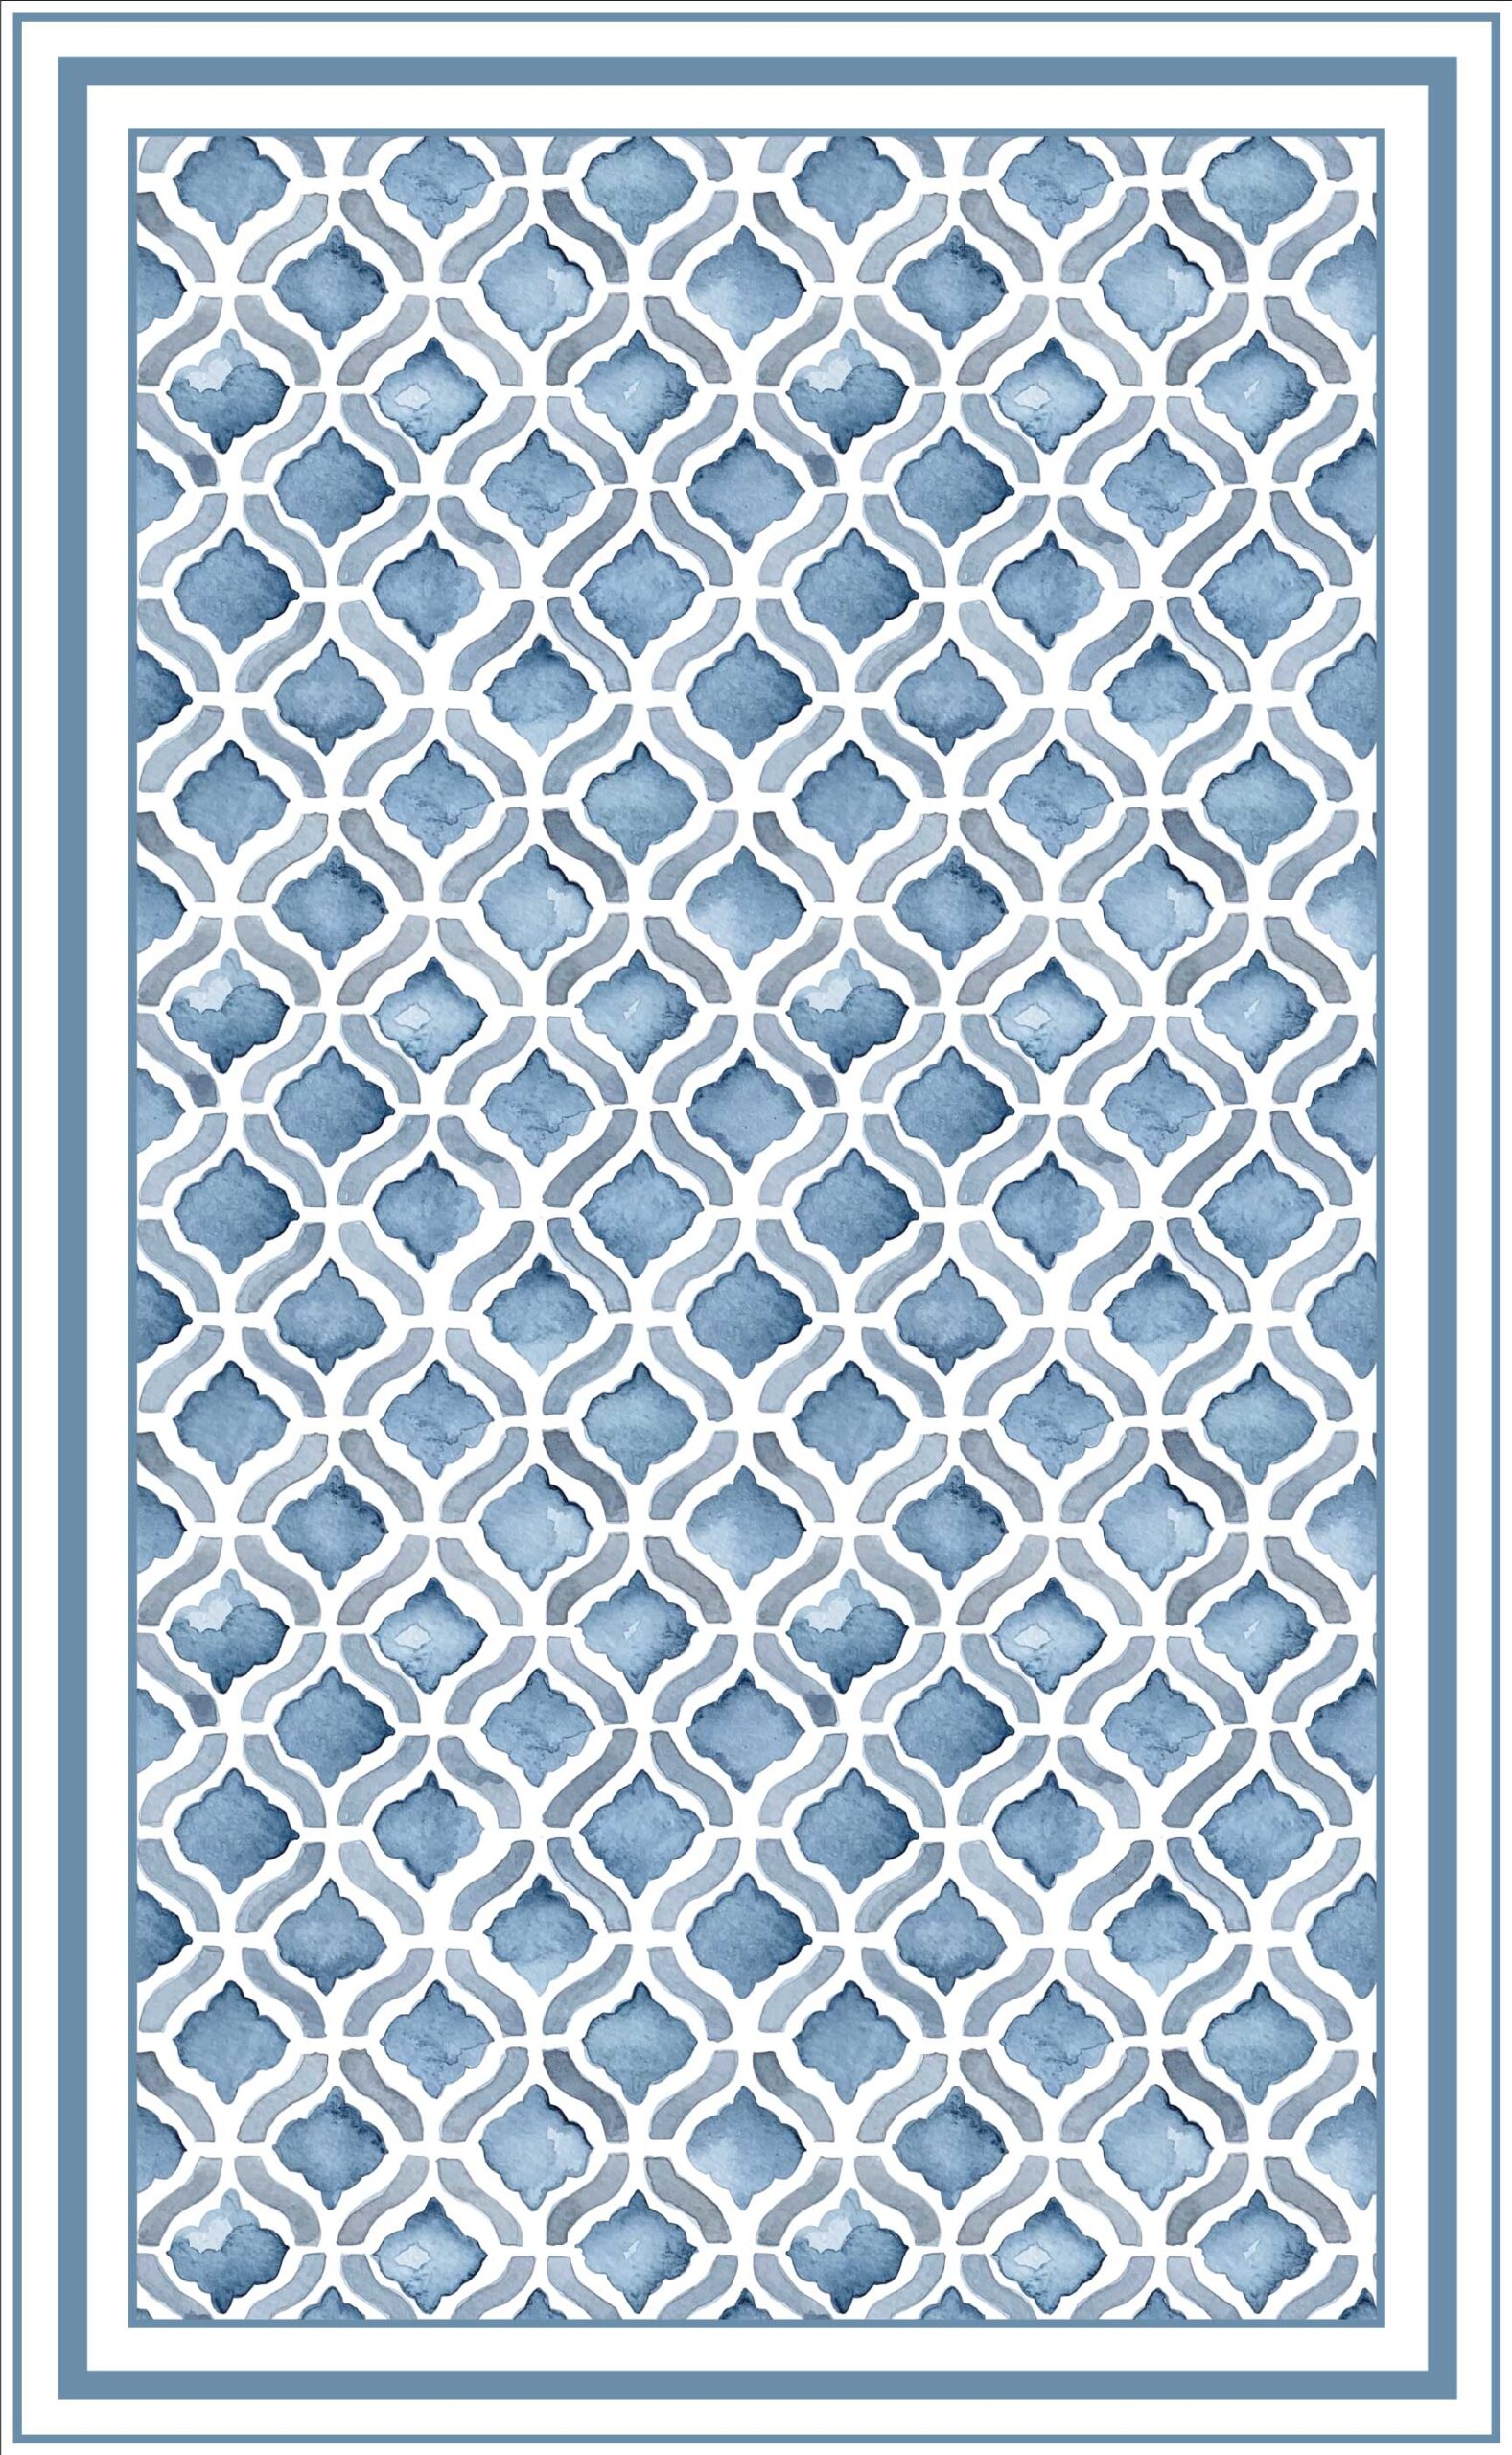 Alfombra vinilica diseño geometrico en acuarelas en tonos azules